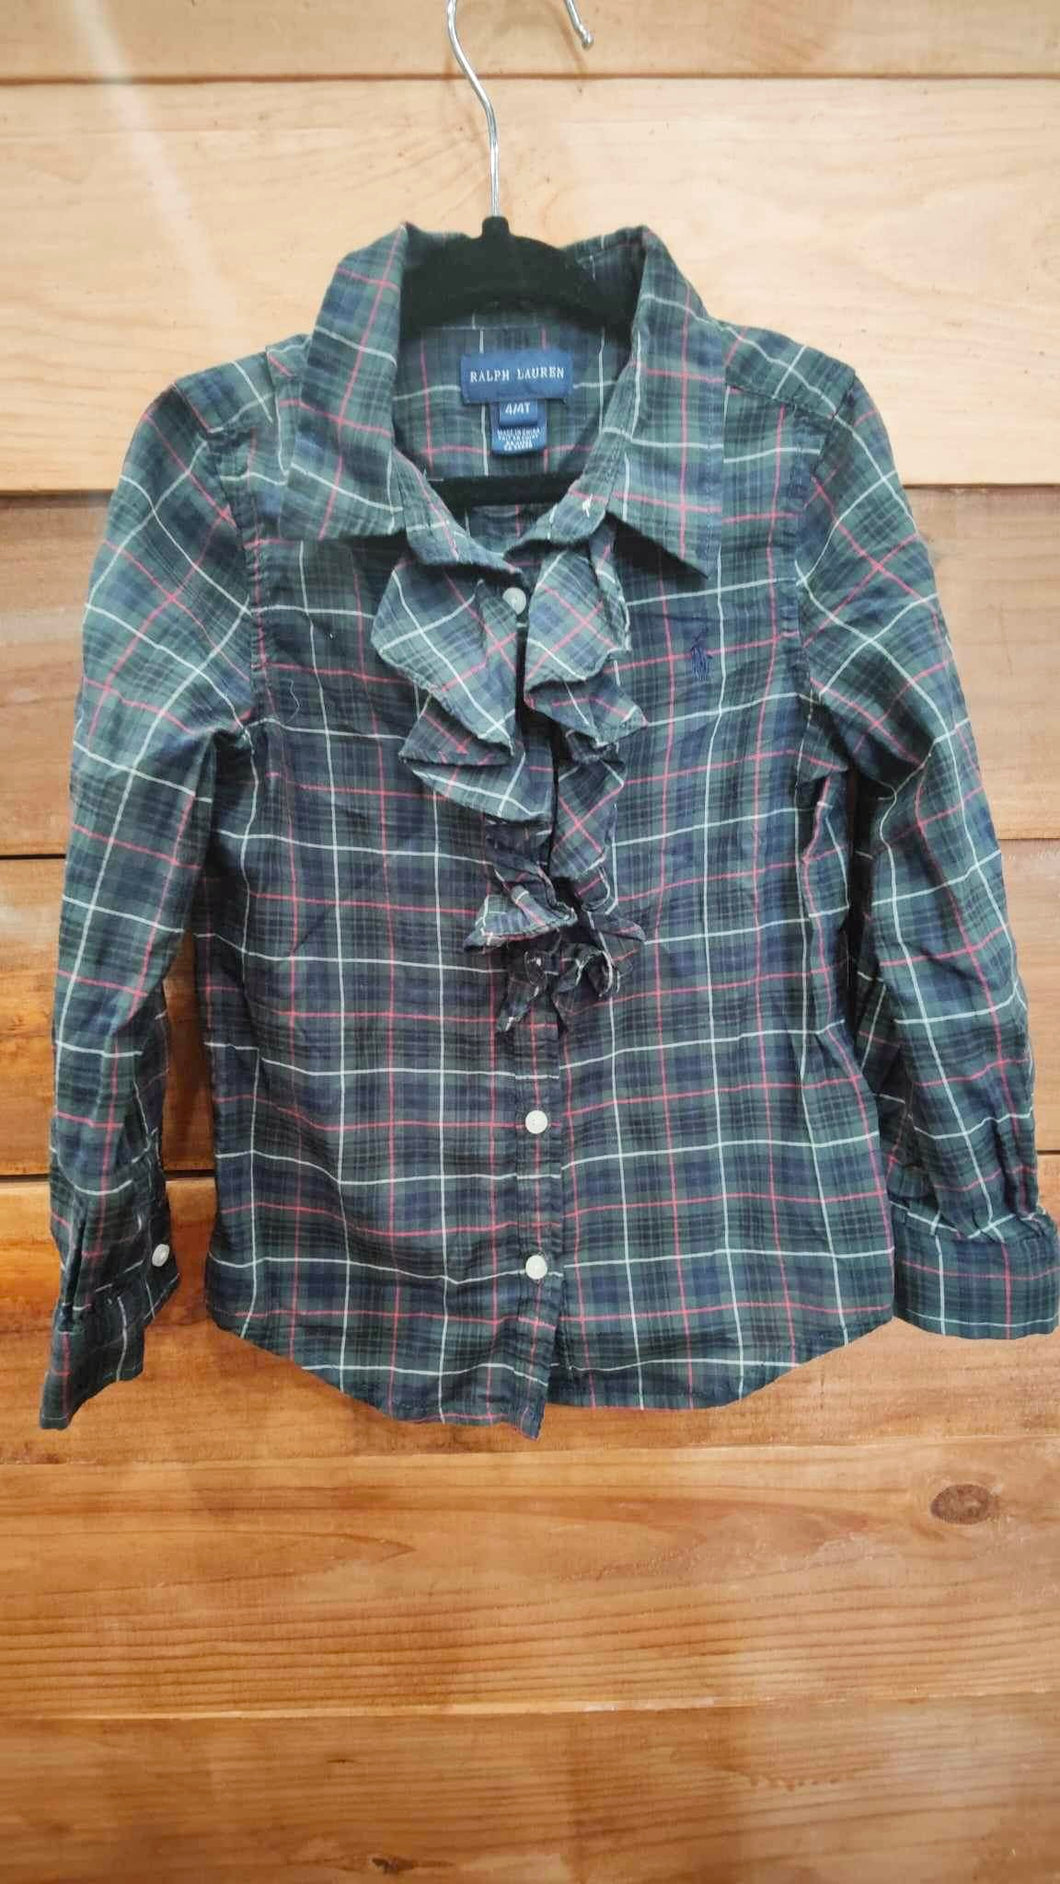 Ralph Lauren Green Plaid Shirt Size 4T